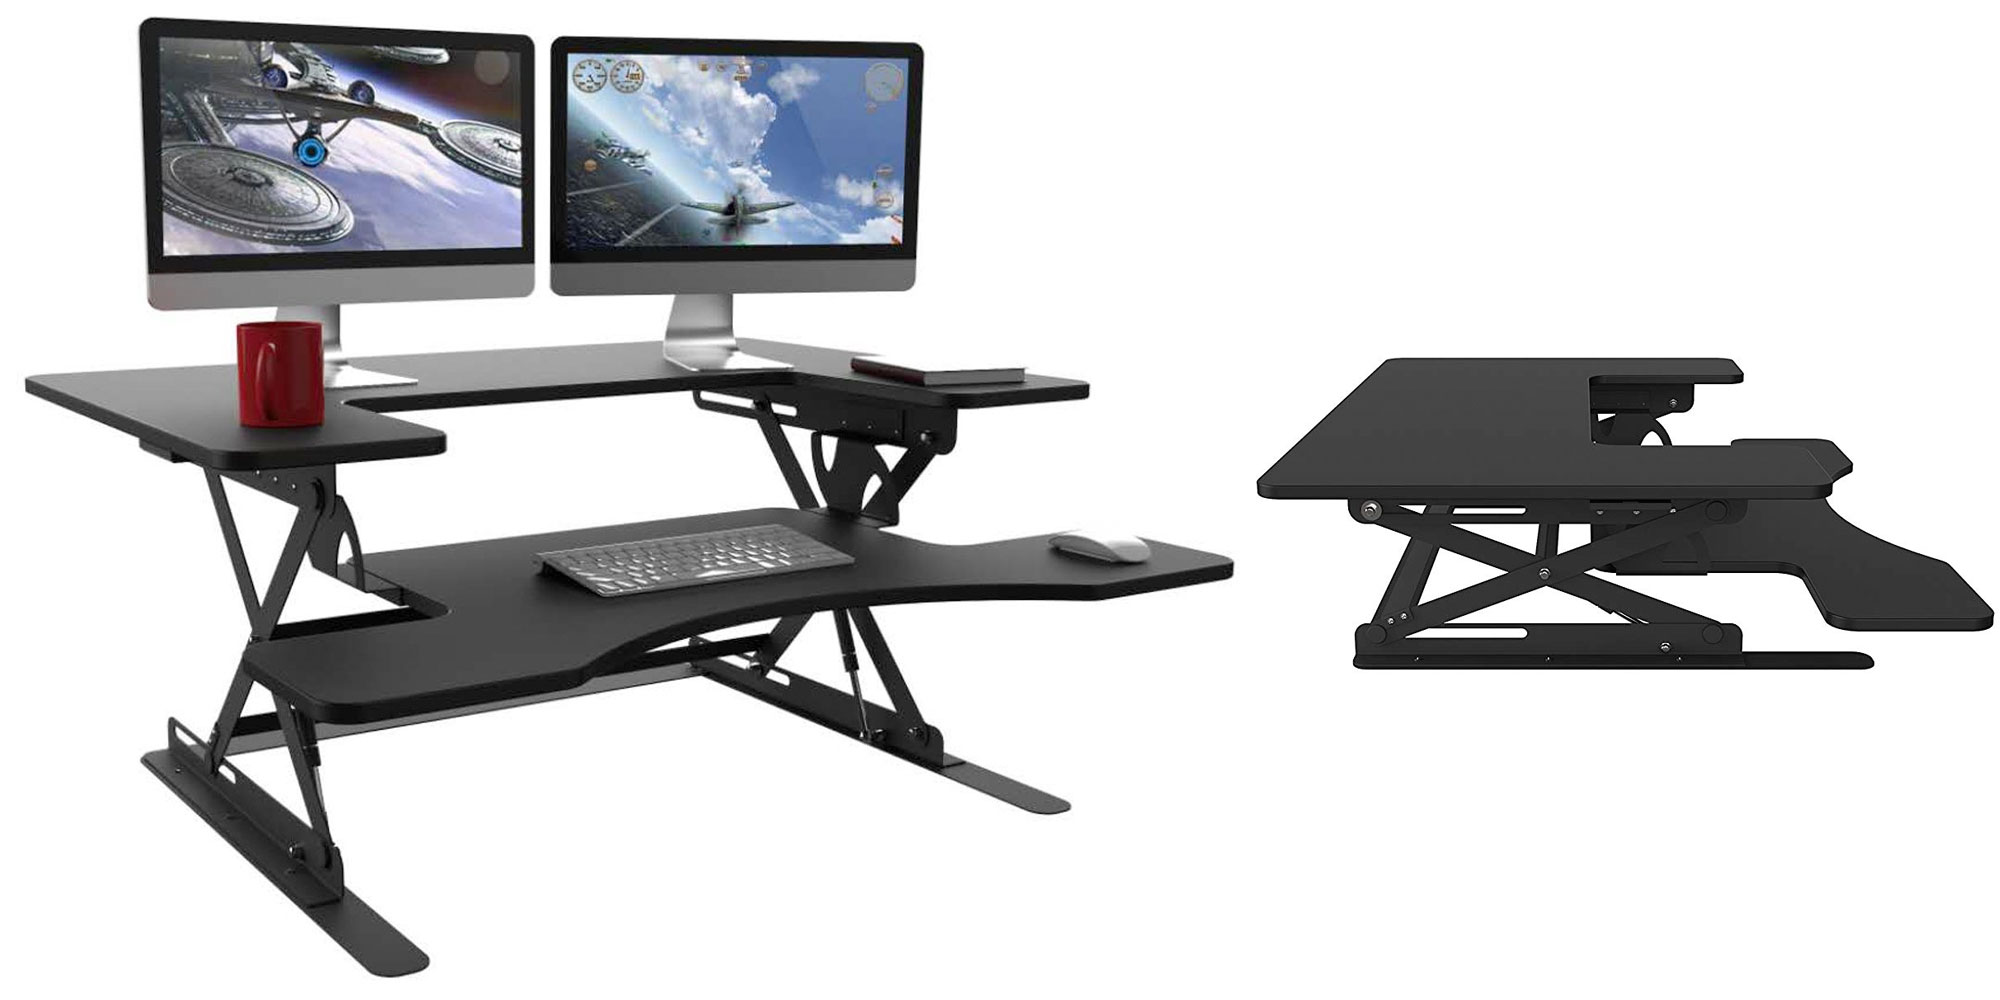 Halter ED-258 Preassembled Height Adjustable Desk Sit/Stand Desk Elevating Desktop 